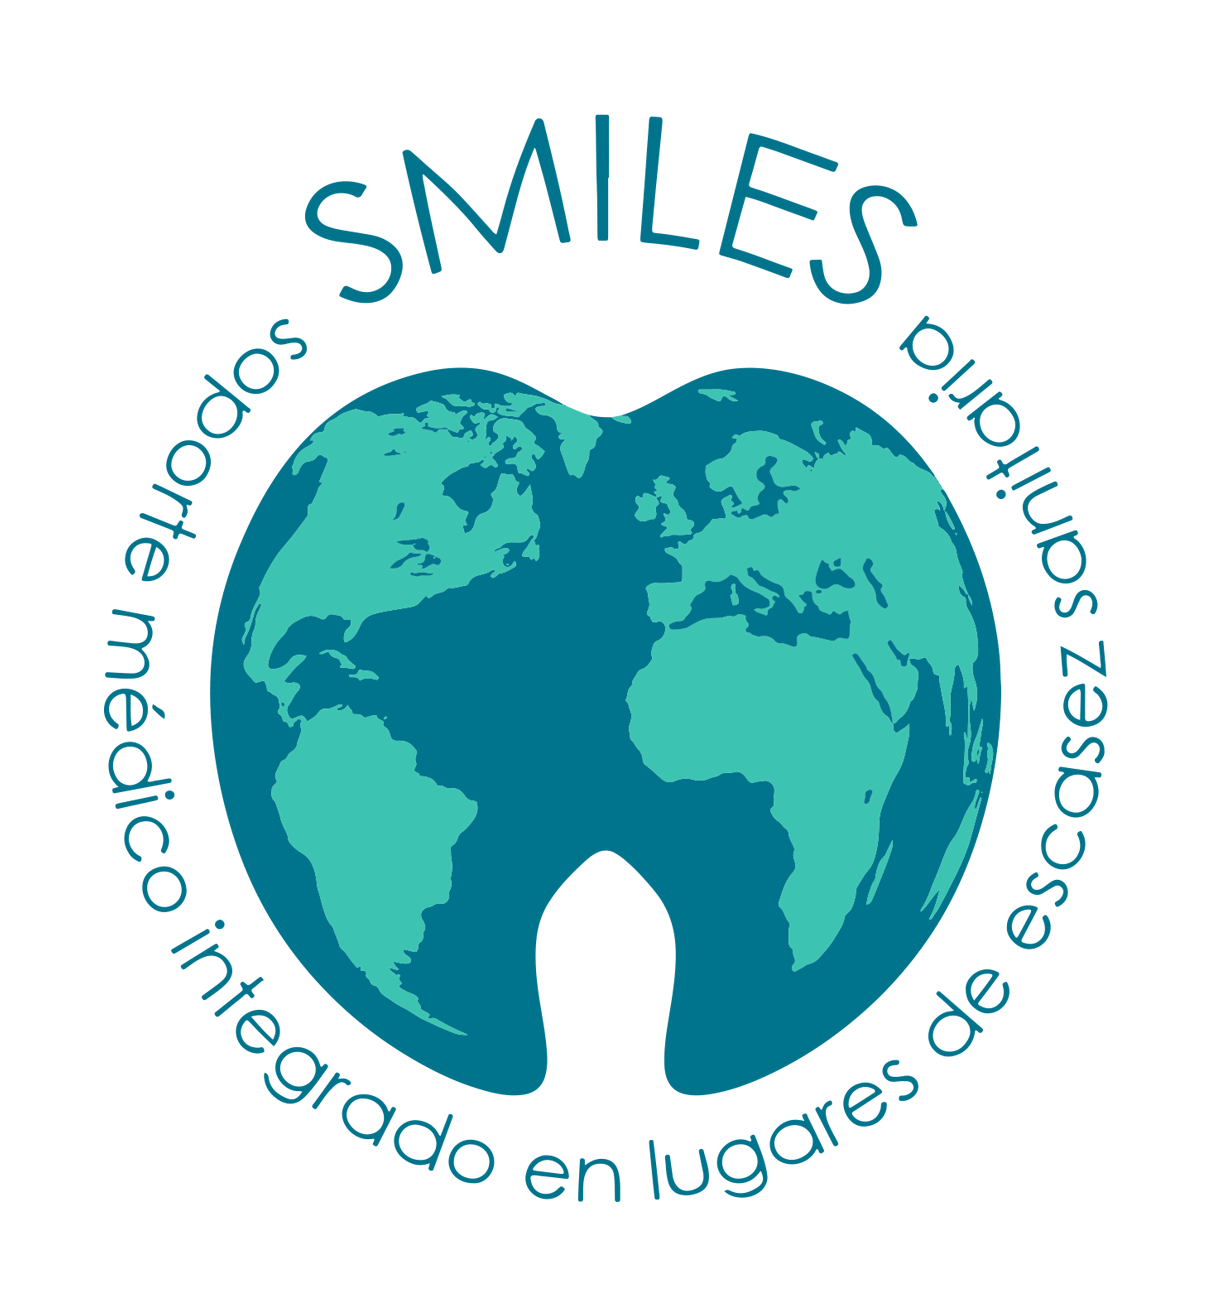 SMILES es una Organización No Gubernamental (ONG) dedicada a cubrir necesidades sanitarias en lugares con escasos recursos.